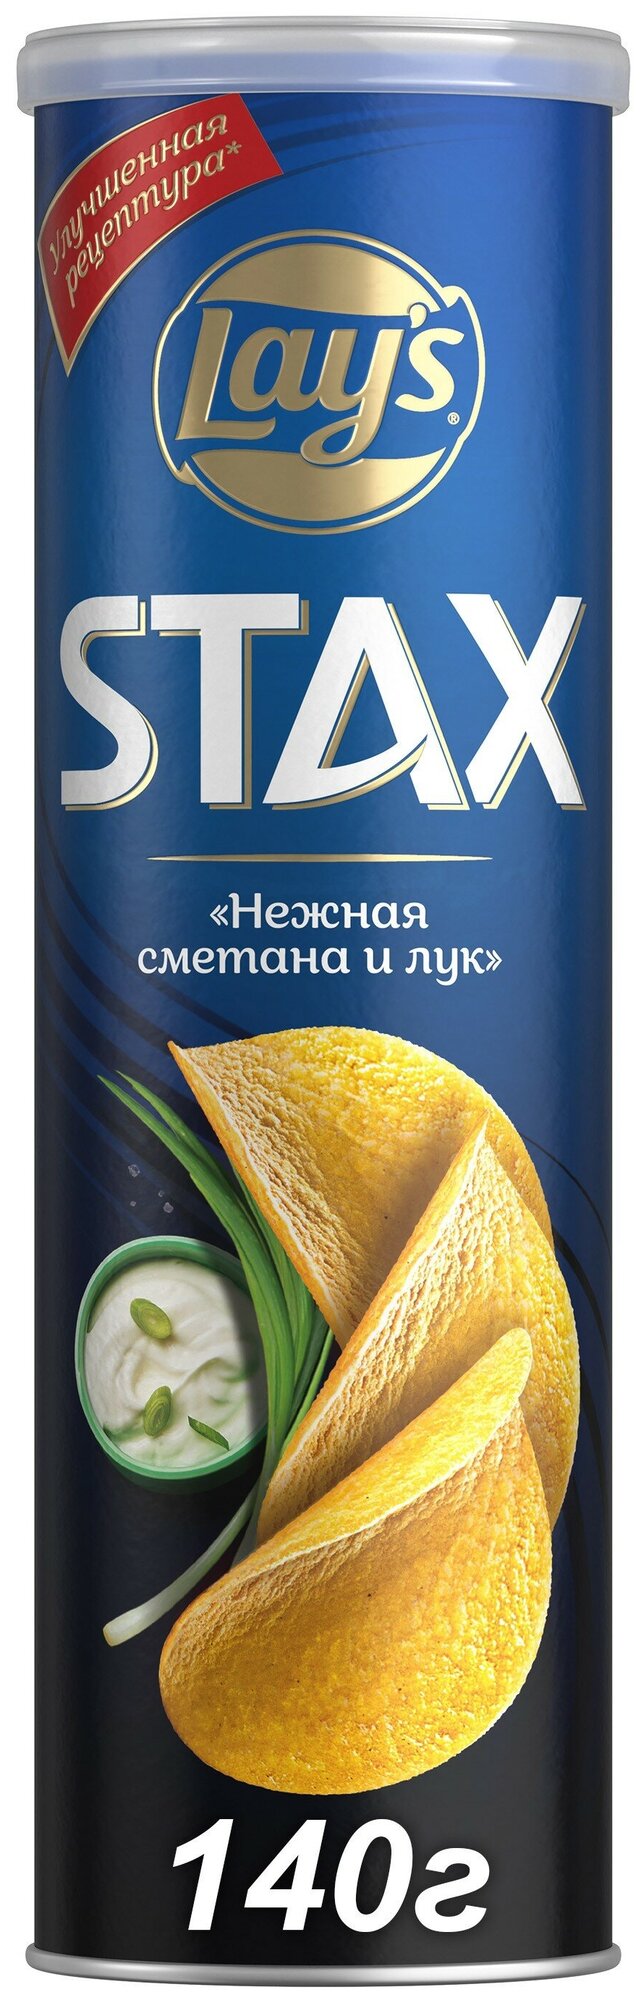 Картофельные чипсы Lay's Stax Сметана и лук 140г